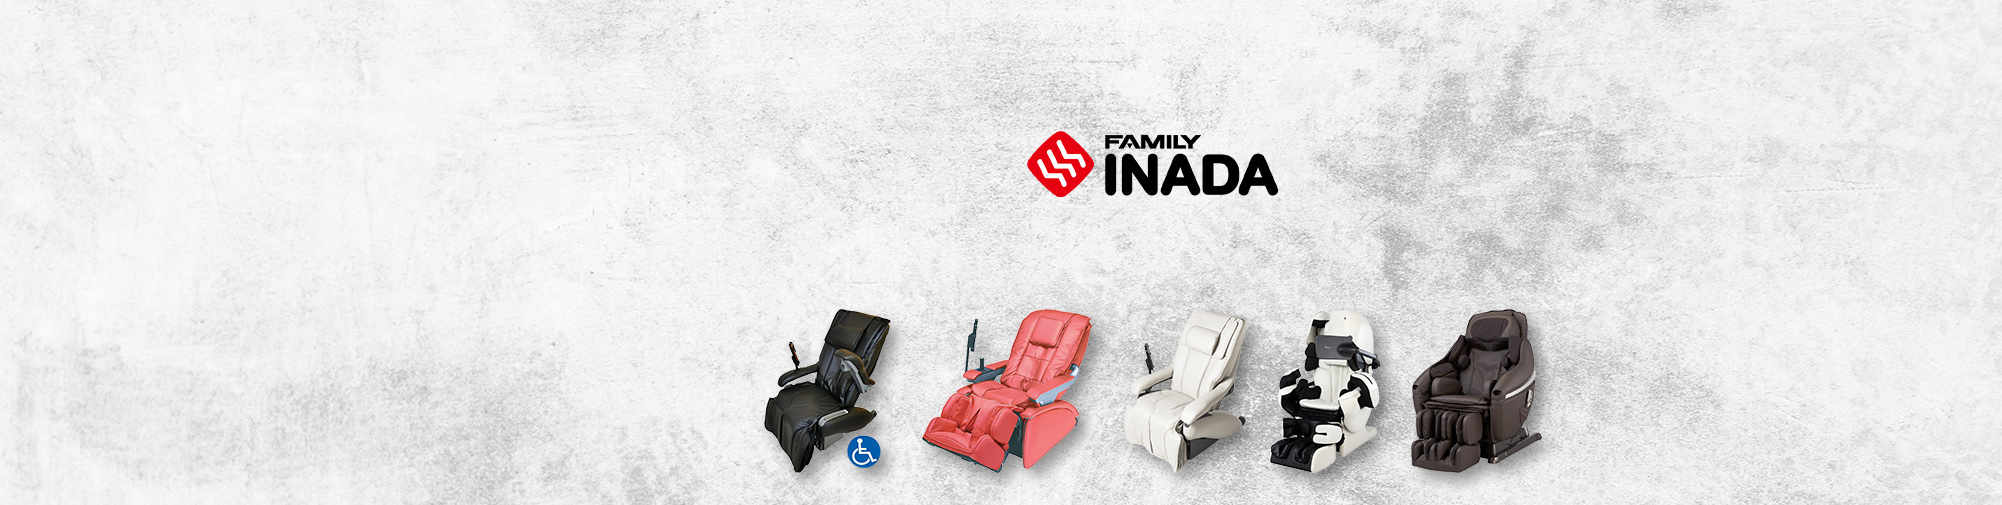 خانواده Inada - یک شرکت سنتی ژاپنی | ماساژ صندلی جهان